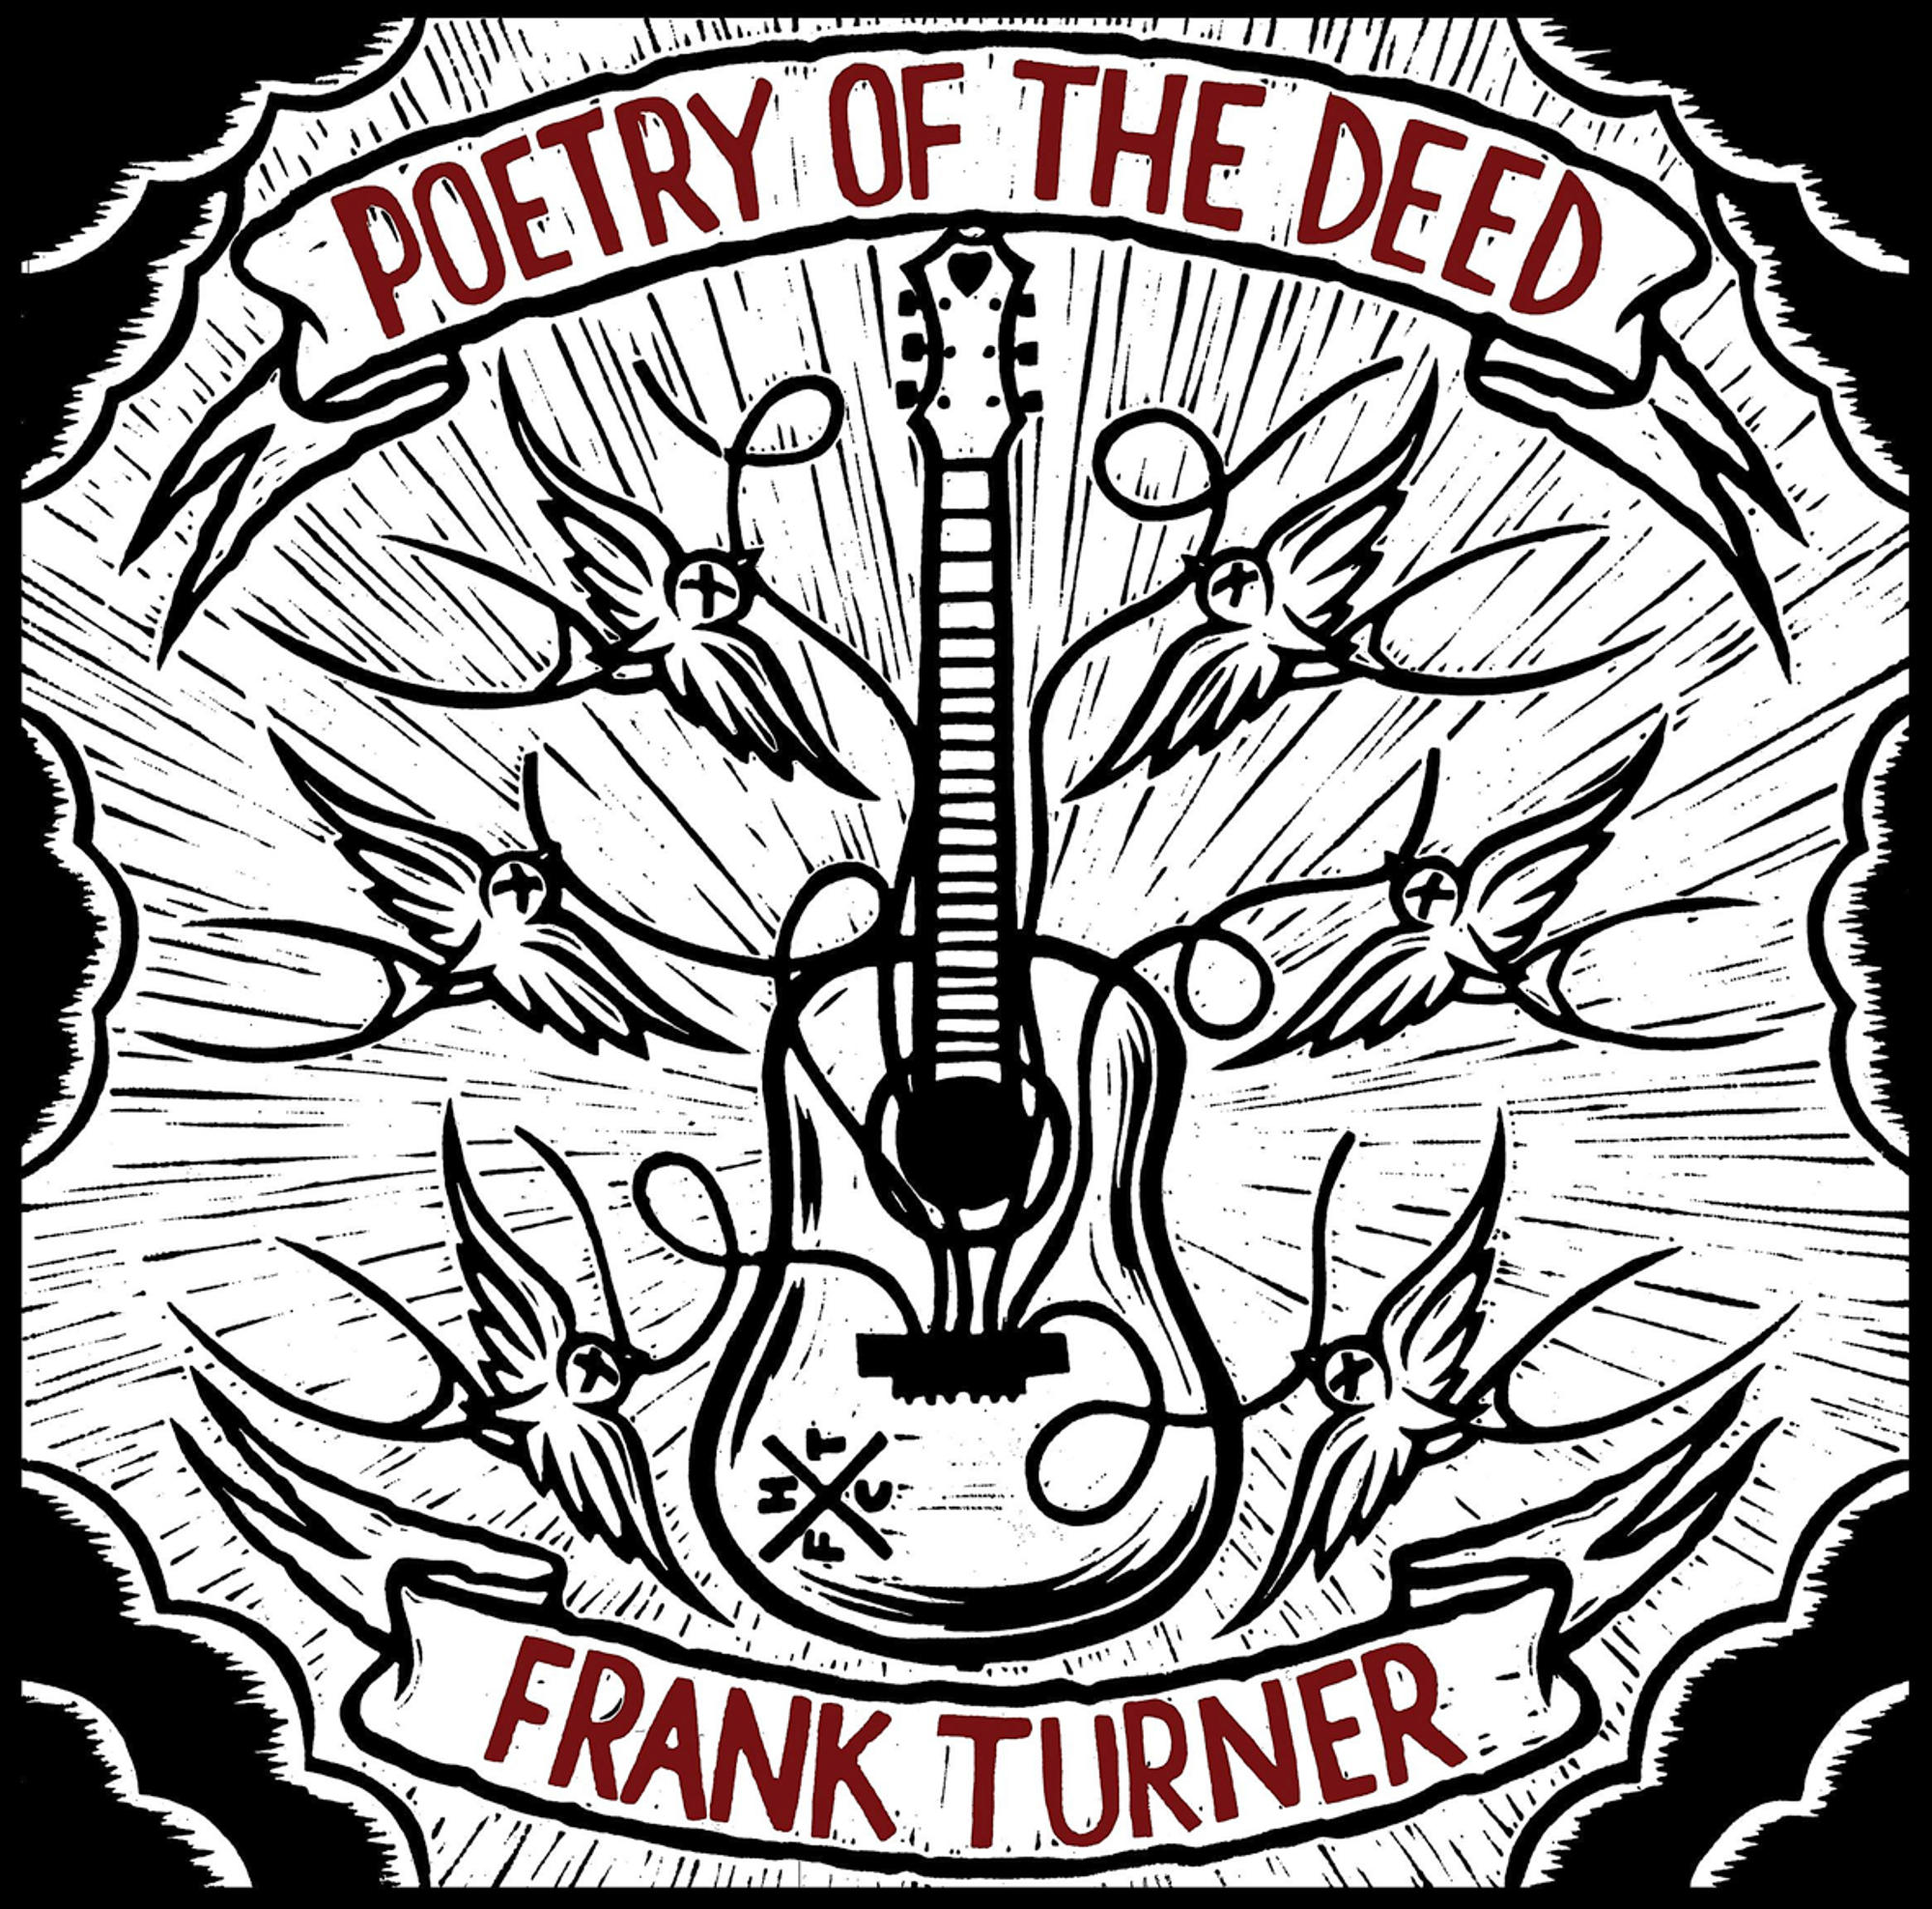 - Turner Deed Frank The - Poetry Of (CD)